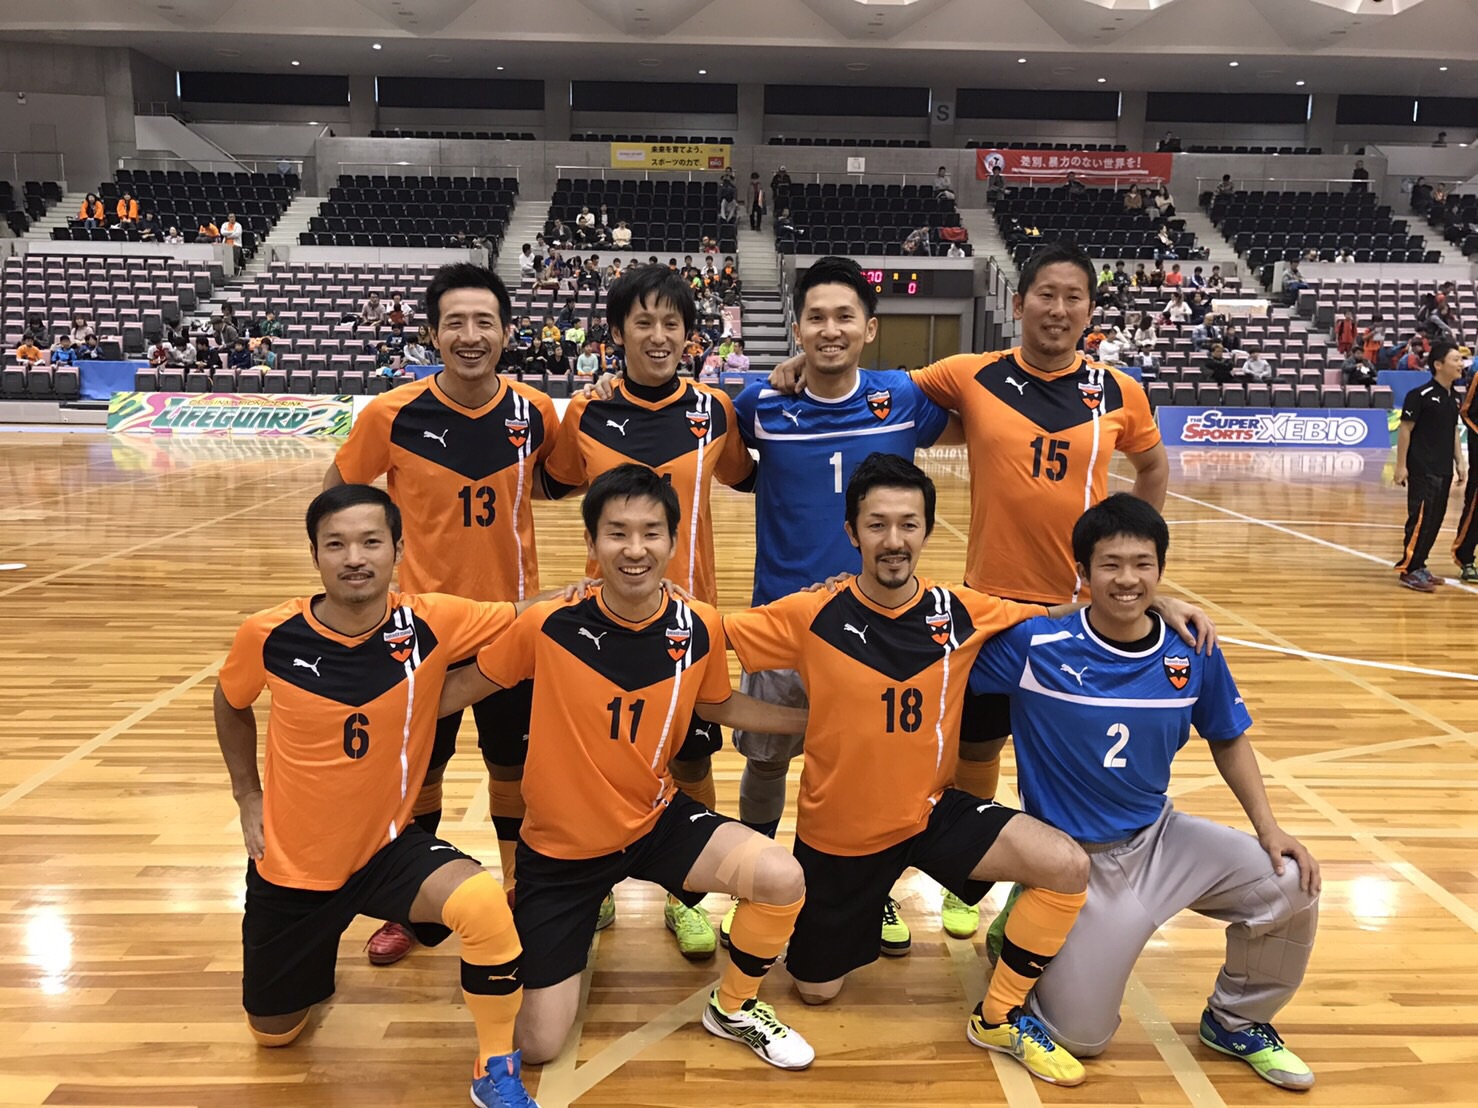 シュライカー大阪ob戦 一般社団法人 Gatt Futsal School ガットフットサルスクール